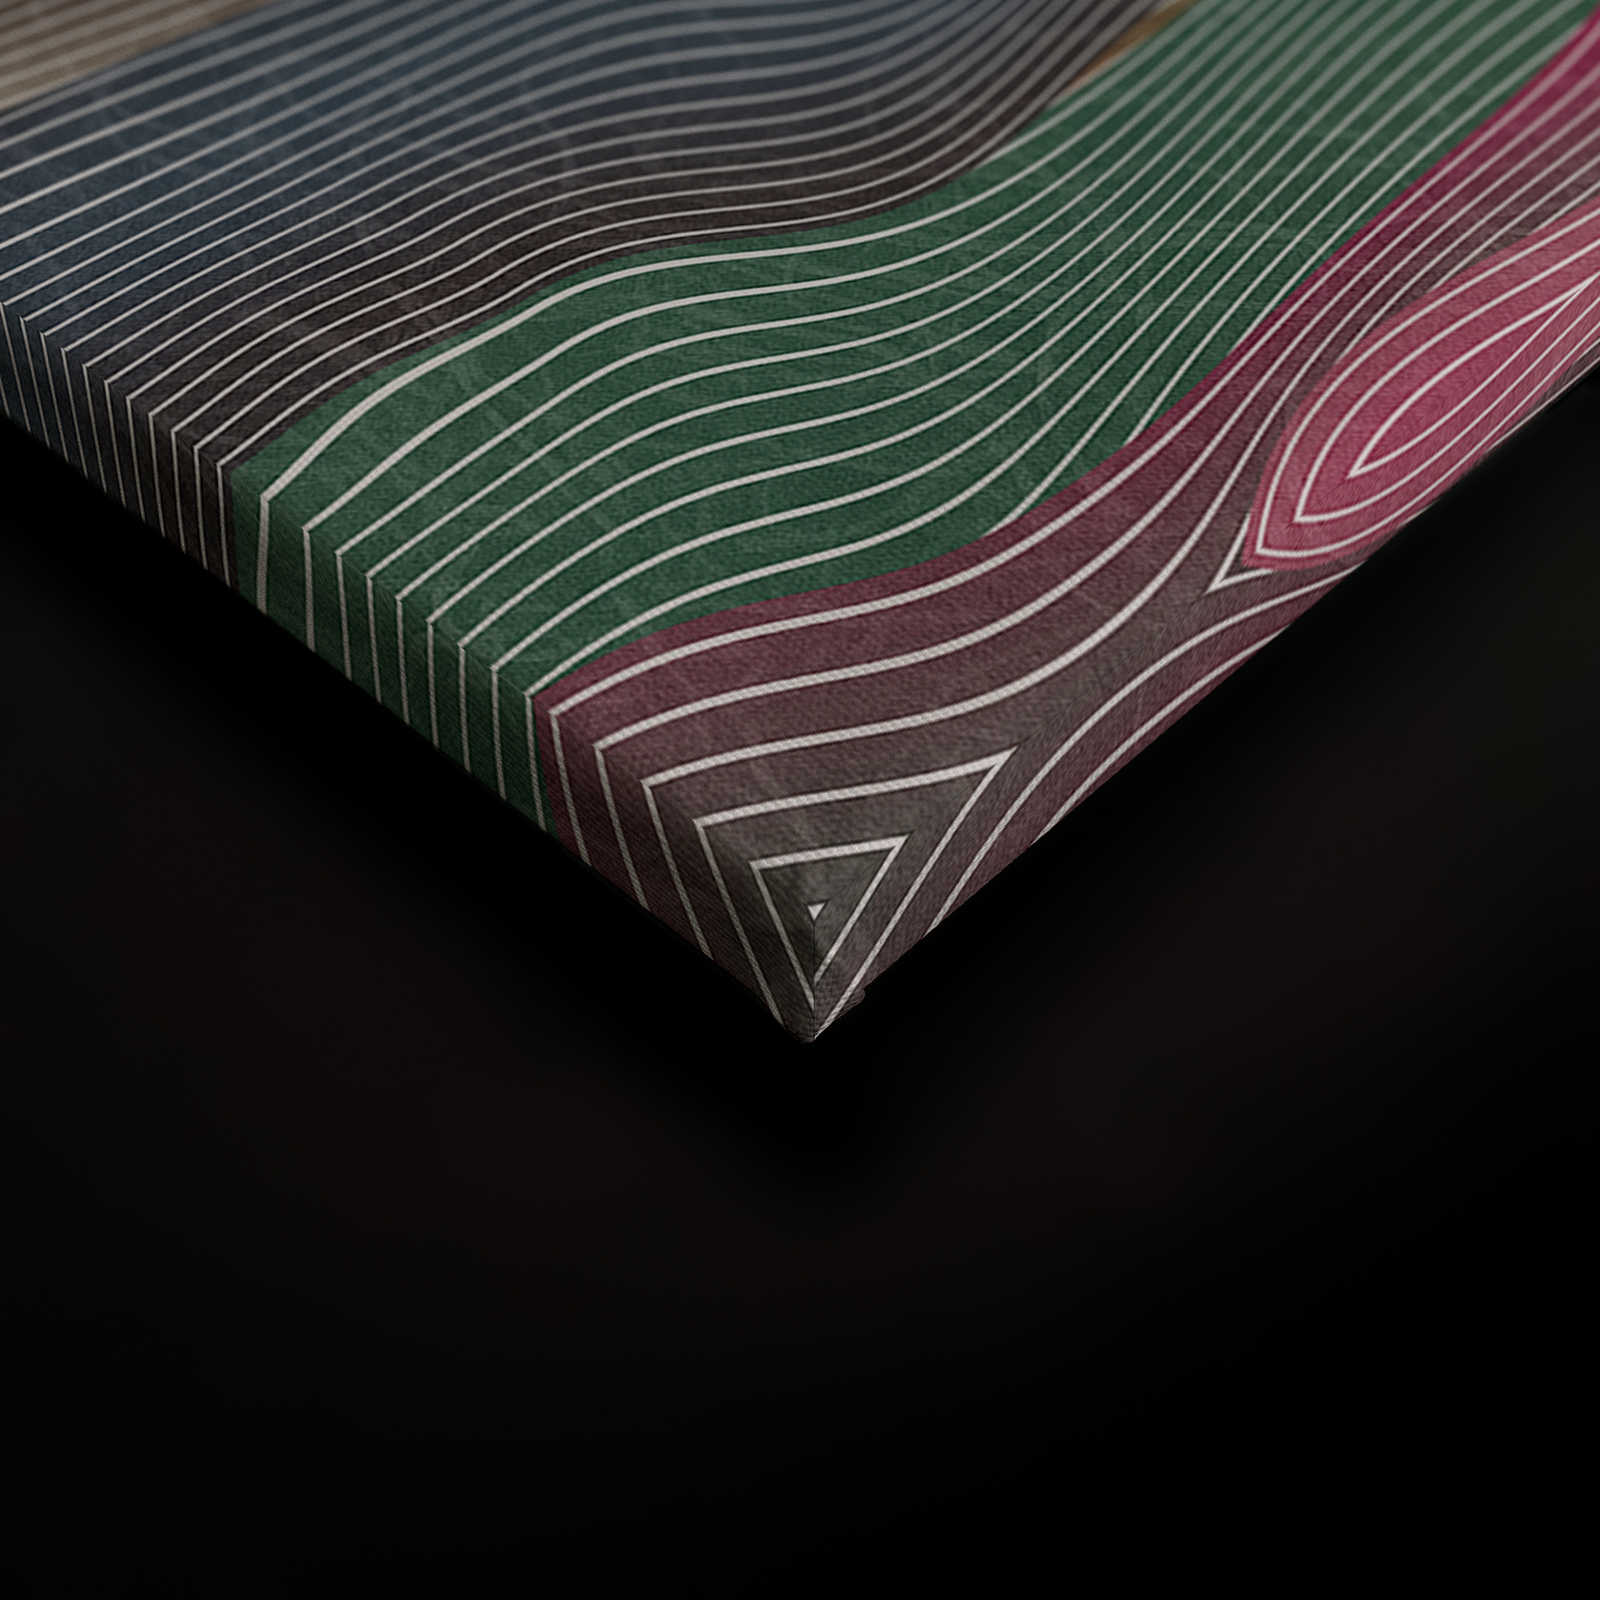             Space 1 - Leinwandbild Wellen Muster Pink & Grün im Retro Stil – 1,20 m x 0,80 m
        